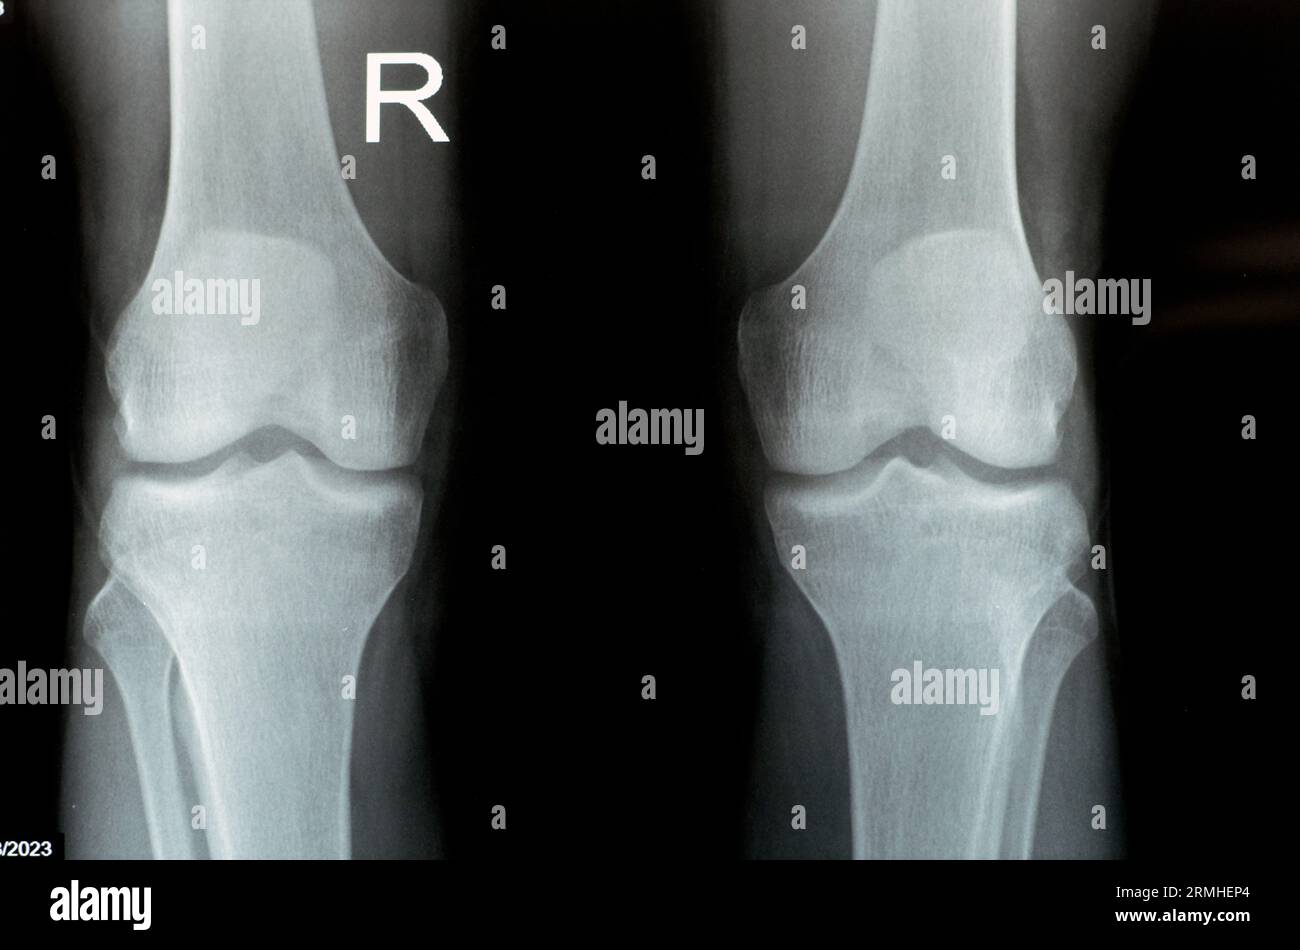 Radiografia semplice delle articolazioni del ginocchio destro e sinistro con la parte inferiore del femore e le parti superiori della tibia, della perone e della rotula che mostrano una normale Unione del ginocchio di A. Foto Stock